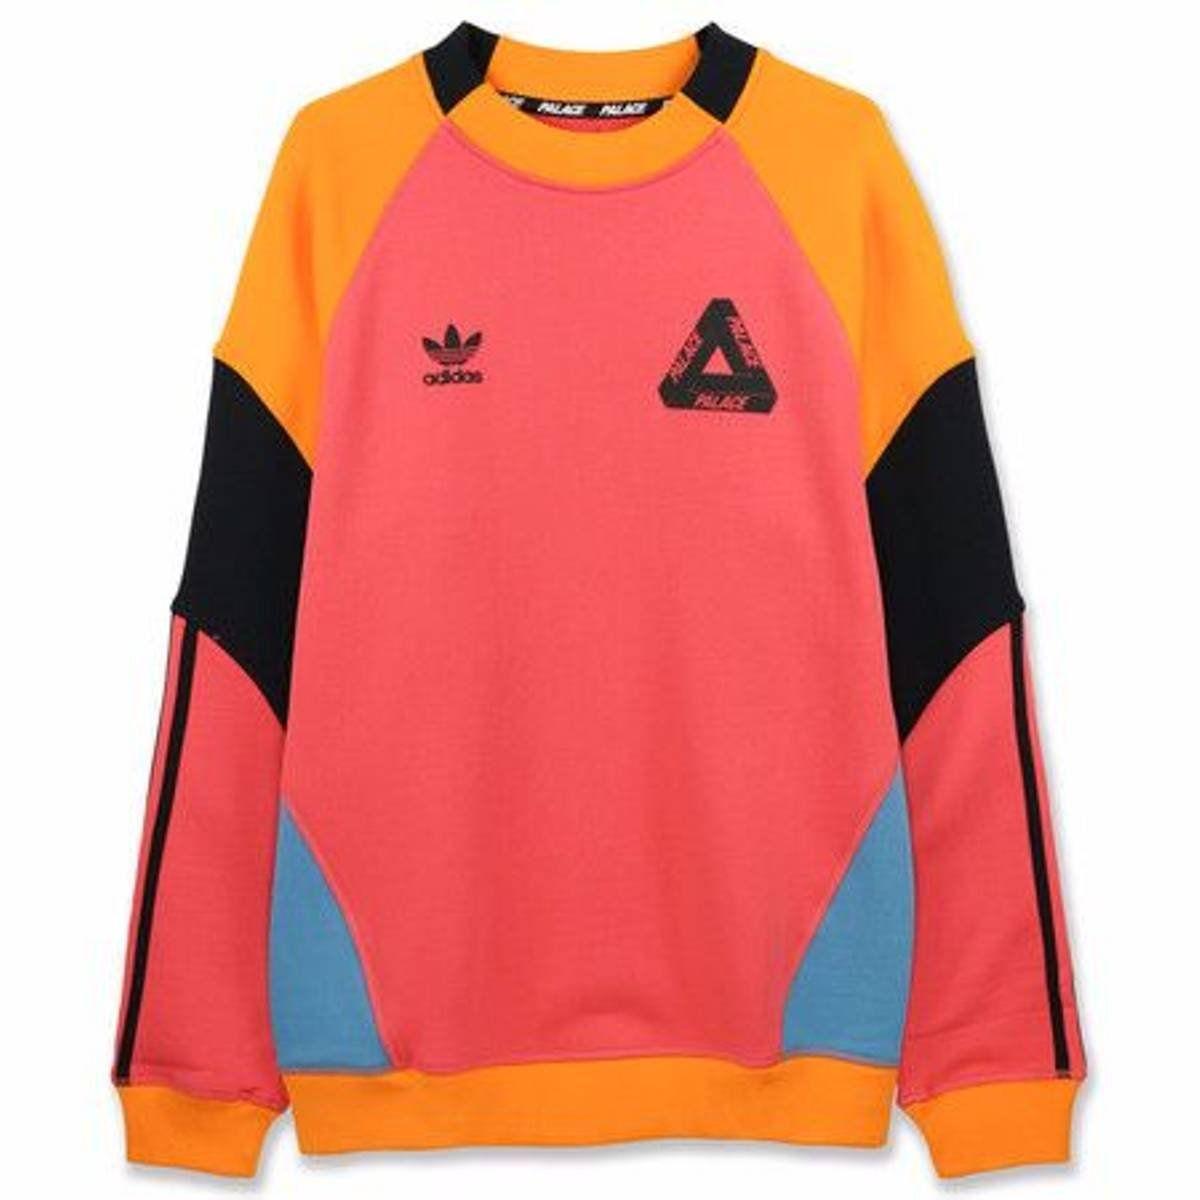 Adidas X Palace Clothing Logo - WTB Adidas x Palace sweatshirt. Looking for size M